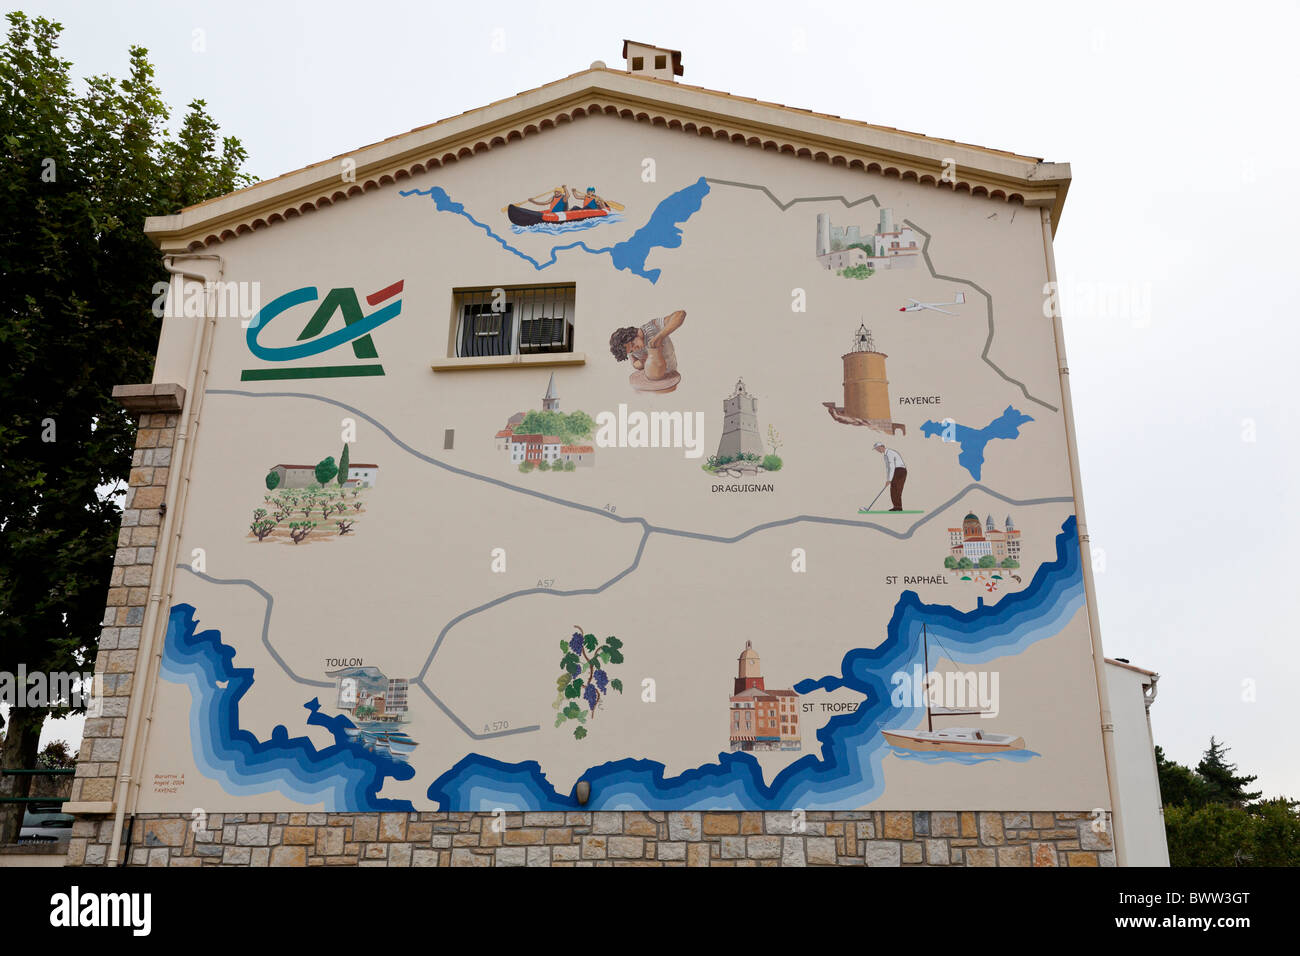 Une peinture murale représentant une carte de la région sur le côté d'un immeuble en Fayance, Var, Provence-Alpes-Côte d'Azur, France. Banque D'Images